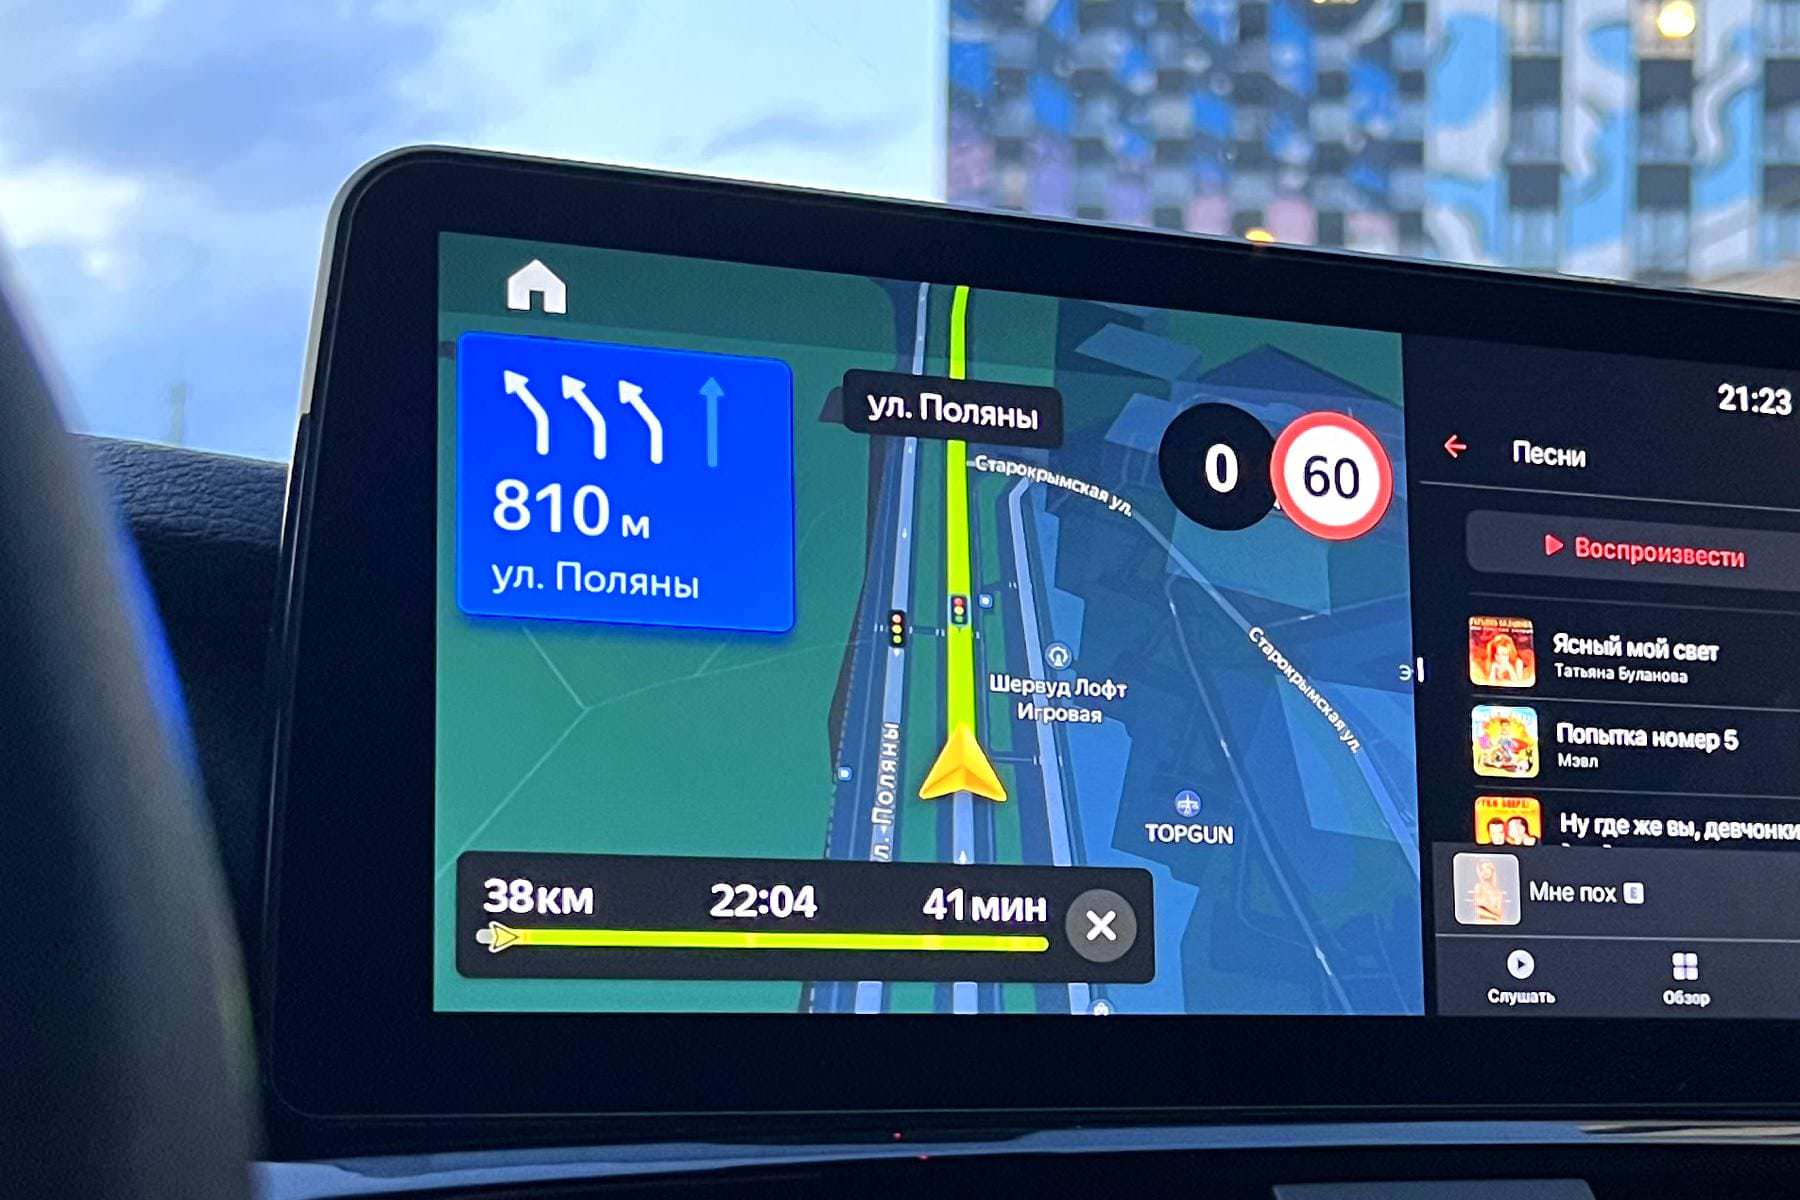 «Яндекс Карты» и «Яндекс Навигатор» теперь могут работать без GPS. Вот как обойти блокировку в Москве и России